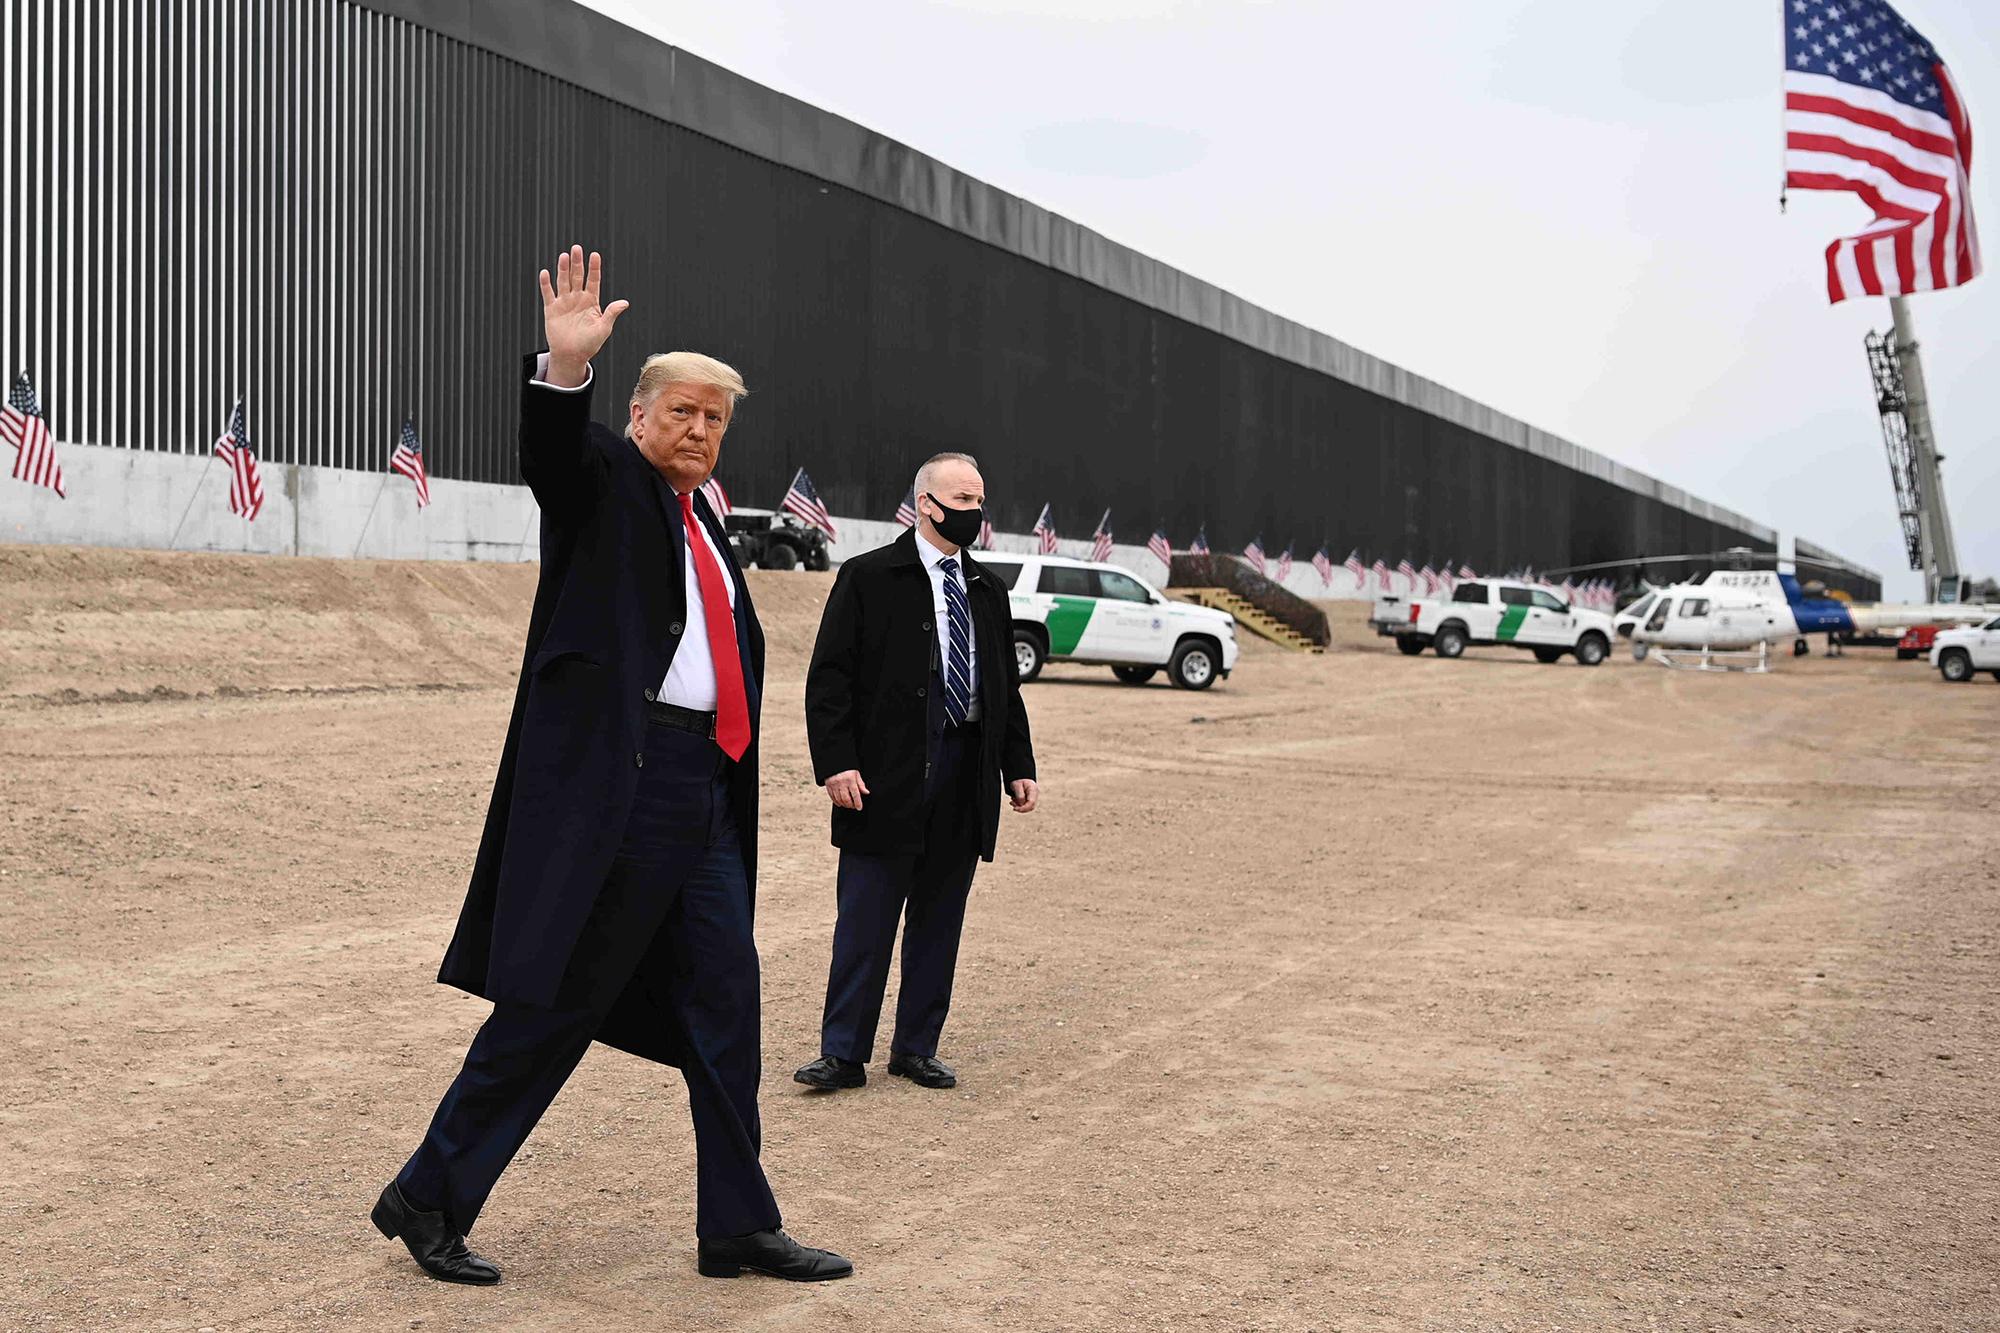 El presidente de los Estados Unidos, Donald Trump, saluda después de hablar y recorrer una sección del muro fronterizo en Alamo, Texas, el 12 de enero de 2021. Foto de El Faro: MANDEL NGAN / AFP).